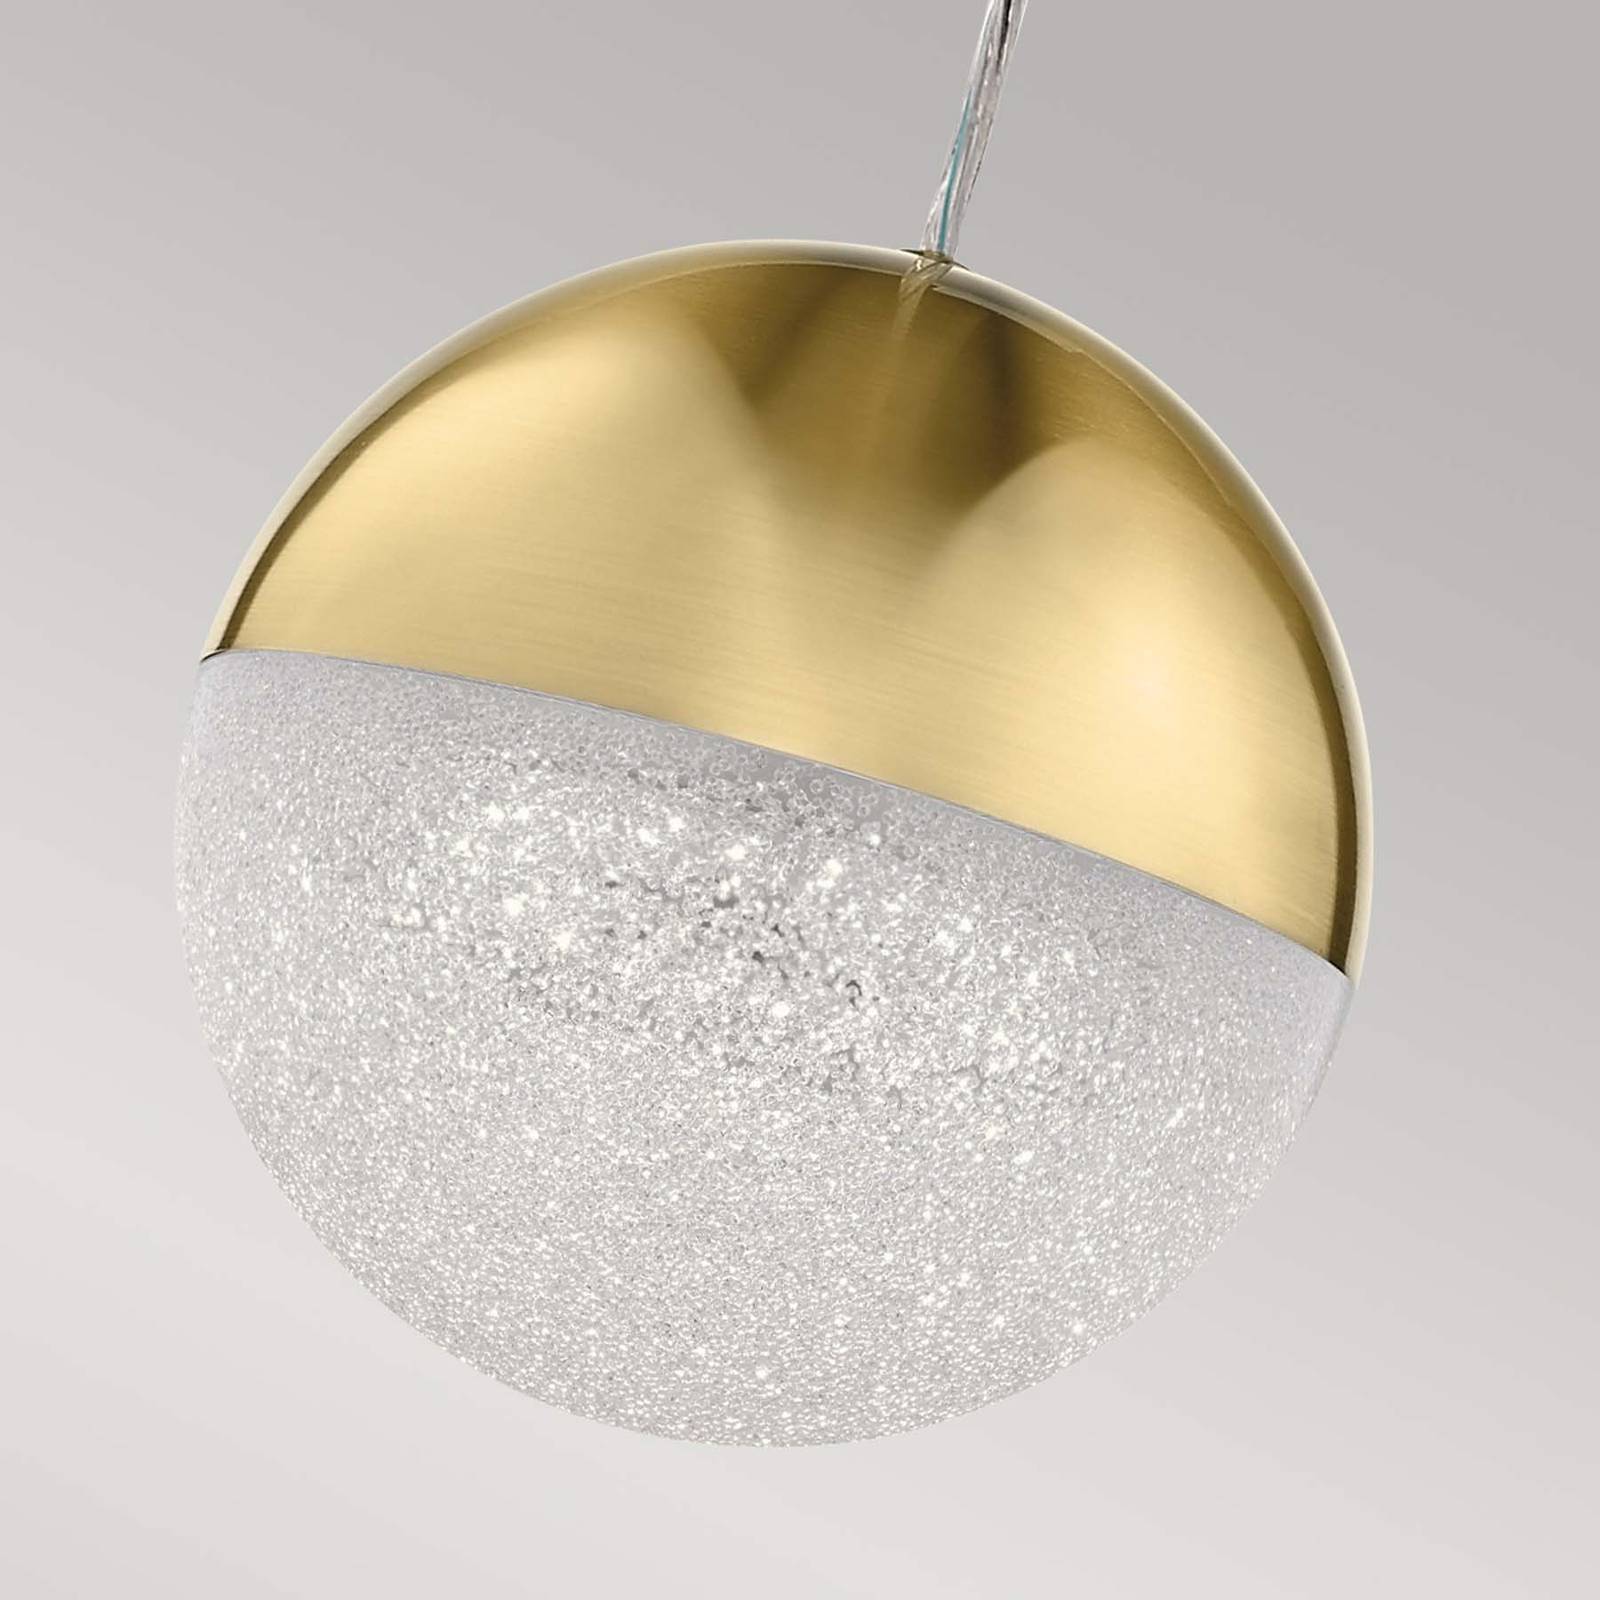 Quintiesse holdfény led-es függőlámpa, arany színű, alumínium, ø 20 cm, gömb alakú